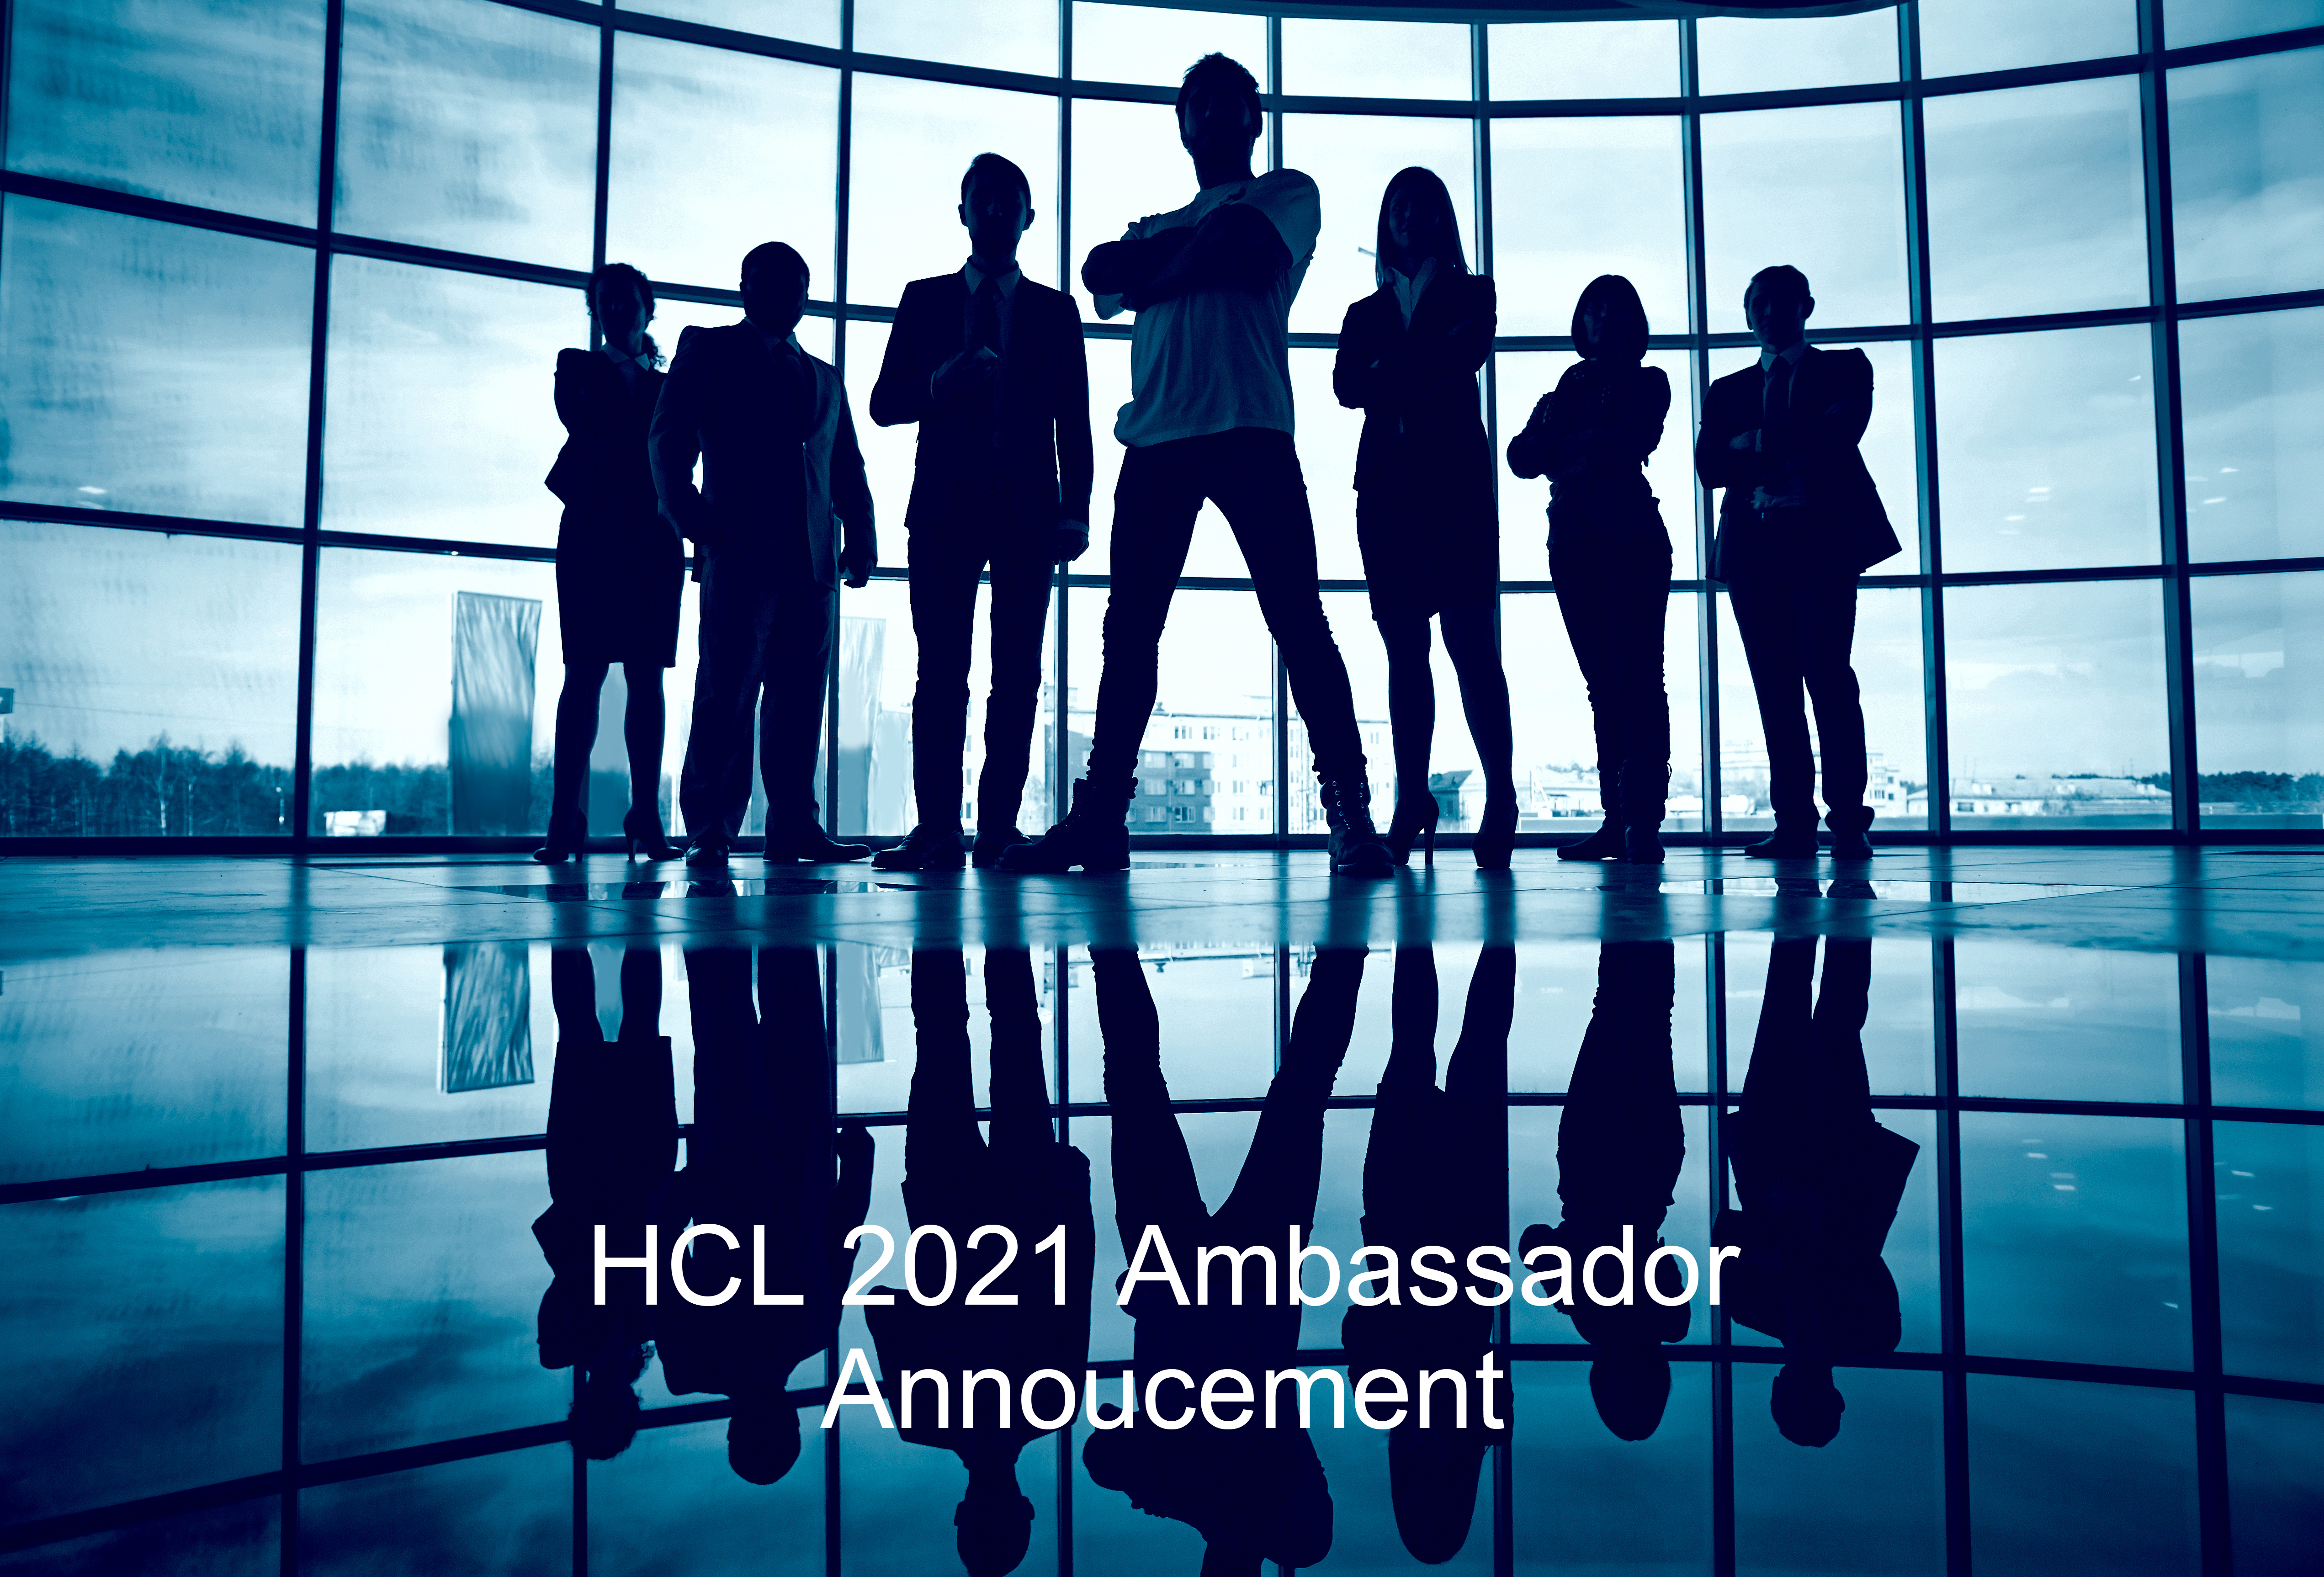 Official HCL Ambassador Announcement 2021